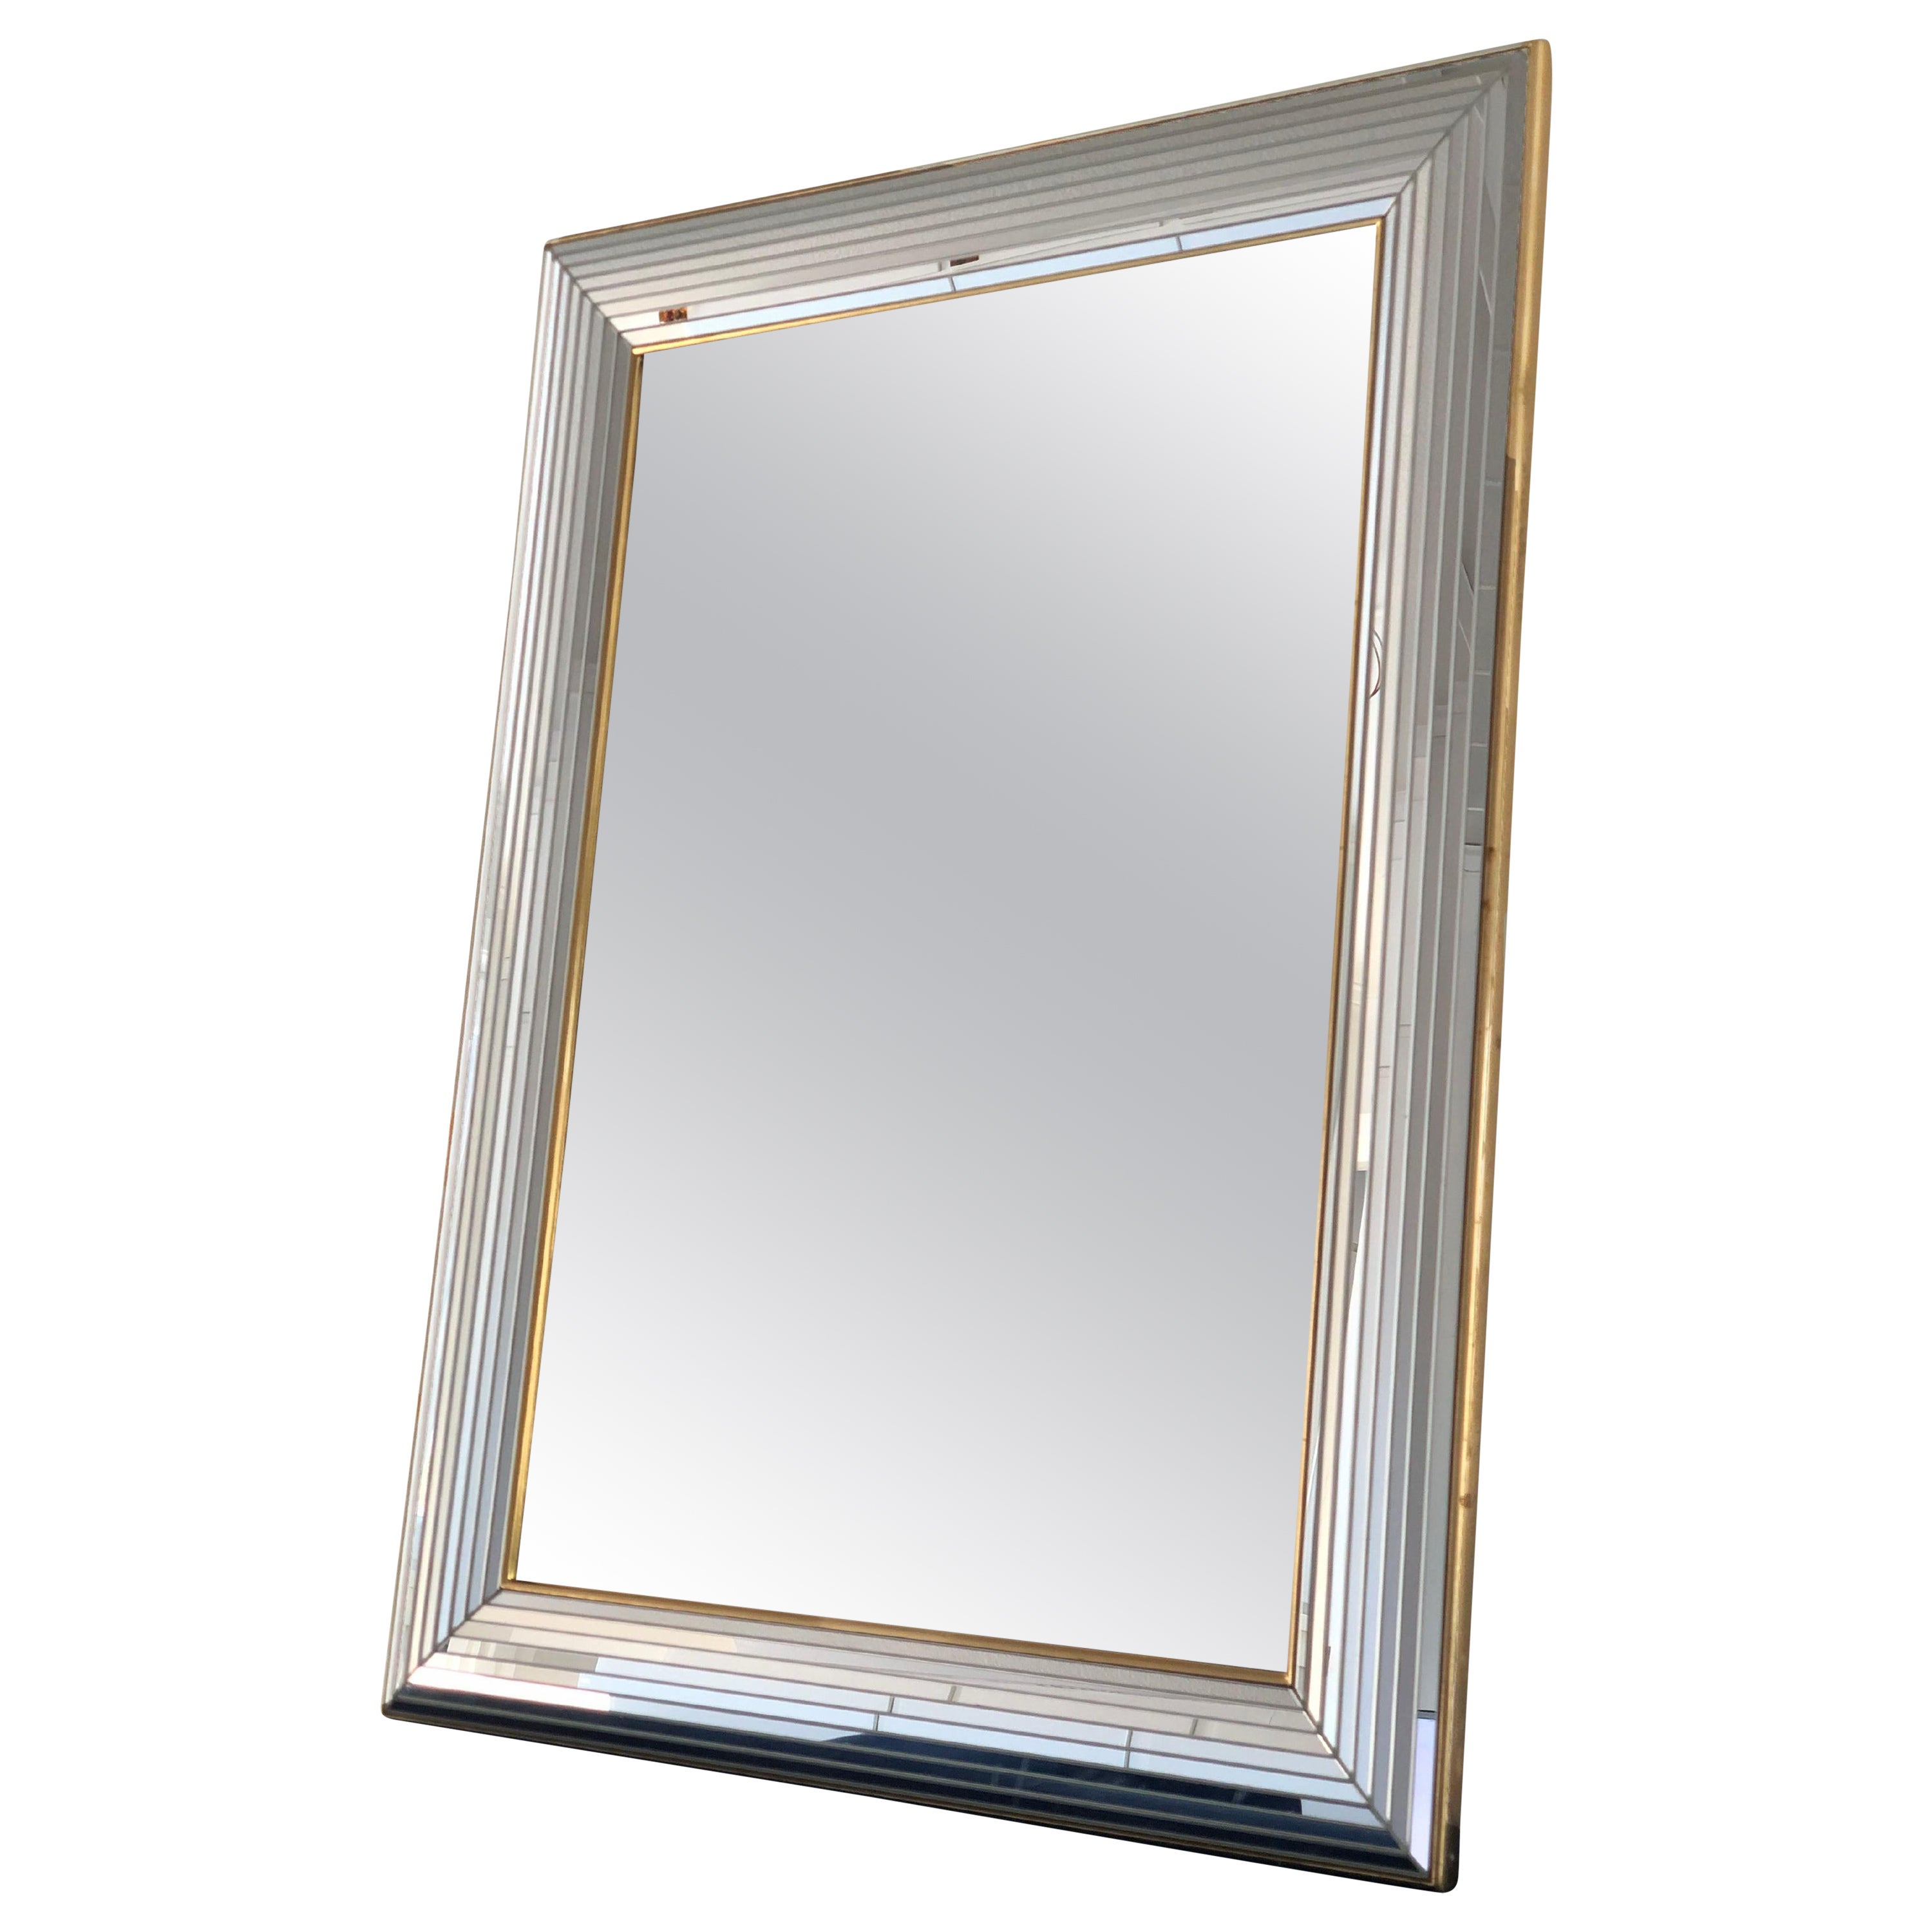 Magnifique miroir belge avec un cadre en verre avec une bande dorée. Le cadre est composé de petits miroirs à facettes sur toute la largeur.

Miroir fait main En bon état. Belgique, 1980

Objet : Miroir
Concepteur : Deknudt
Marque : un autocollant